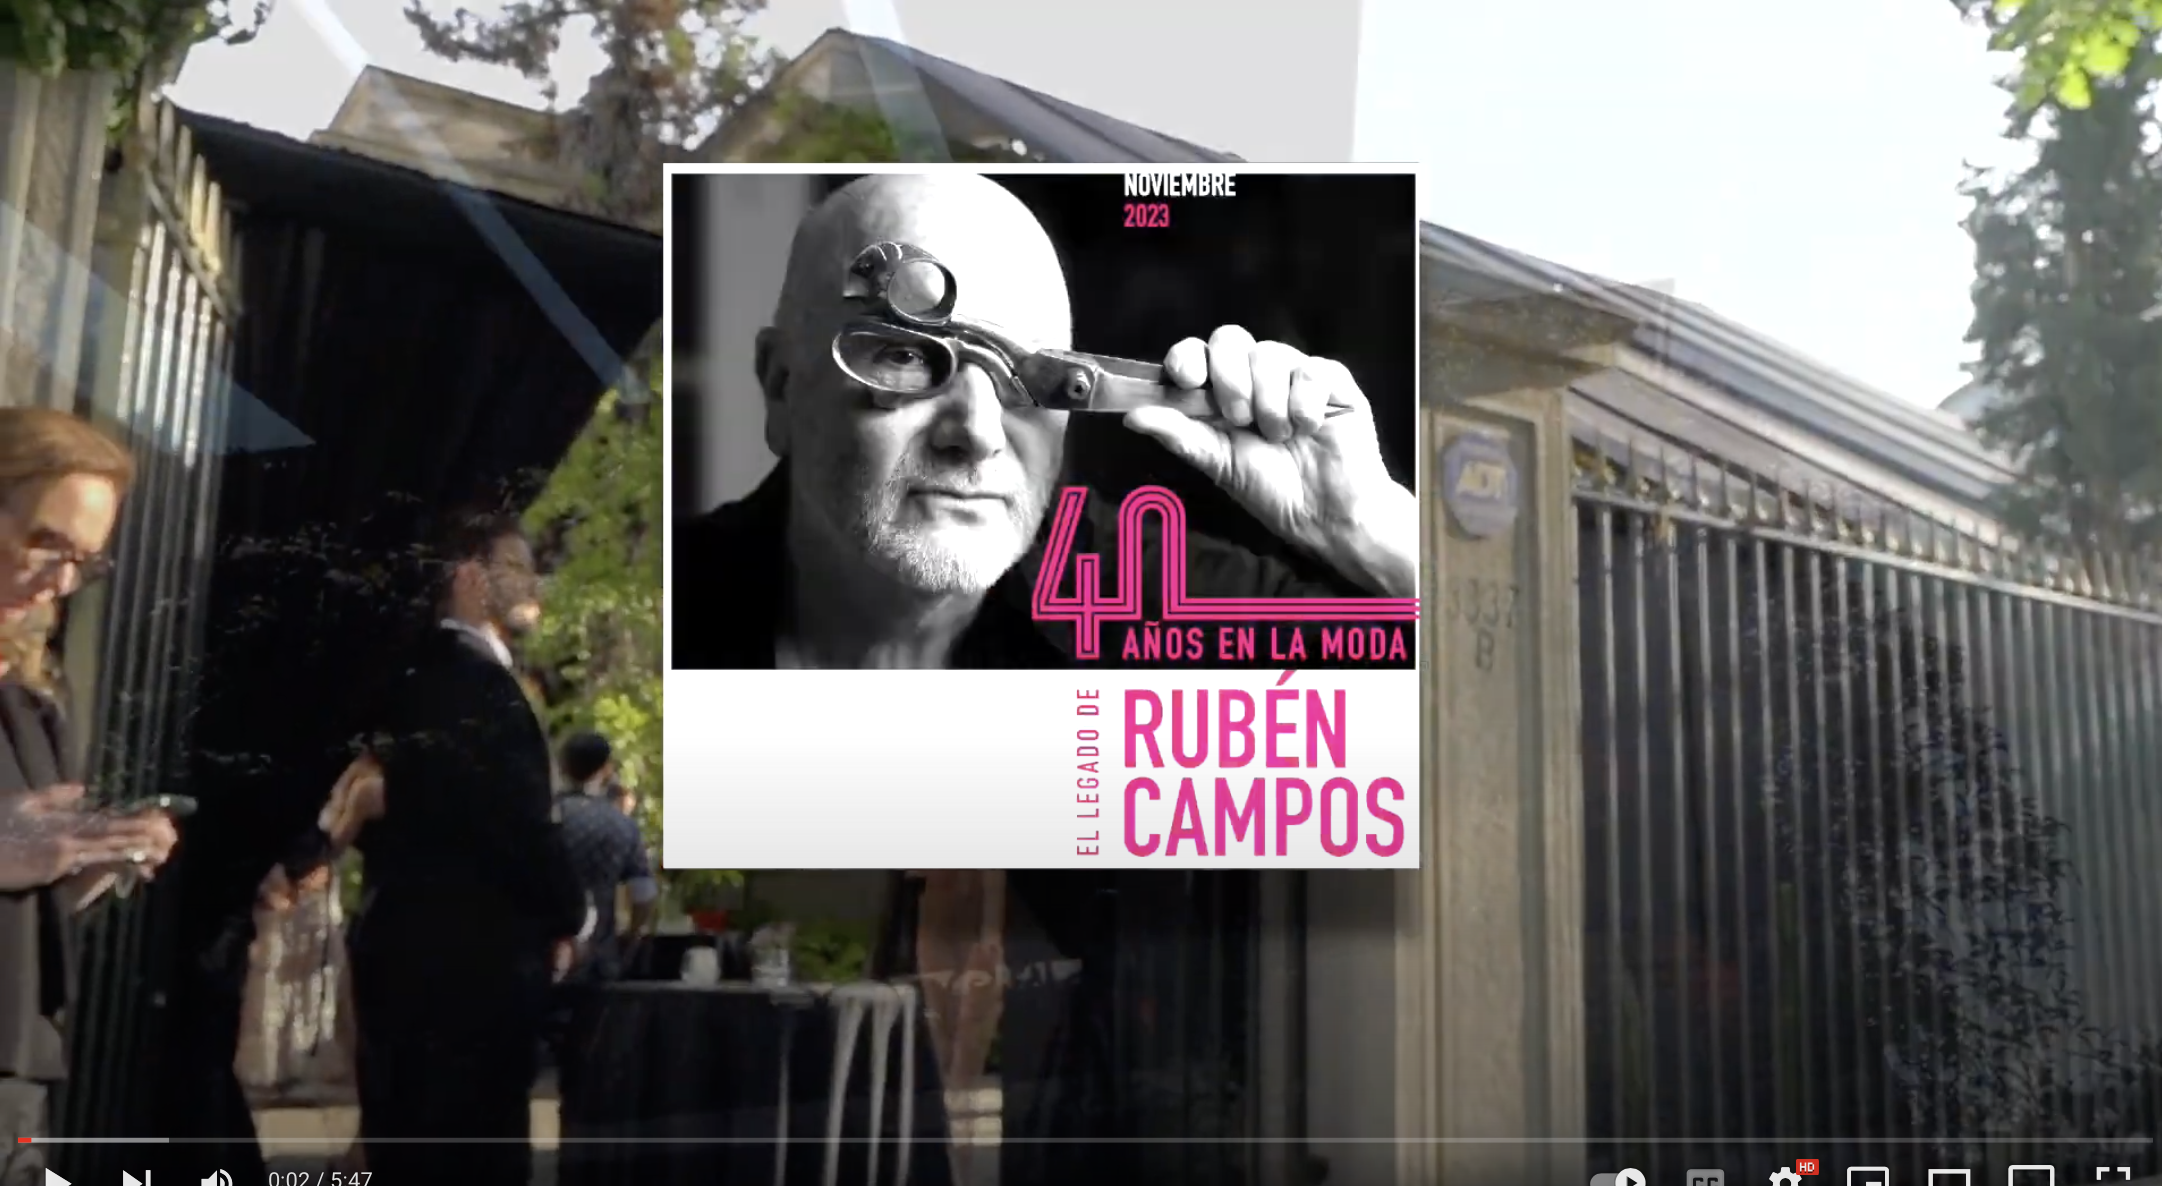 El Legadode Rubén Campos I 40 Años en la Moda